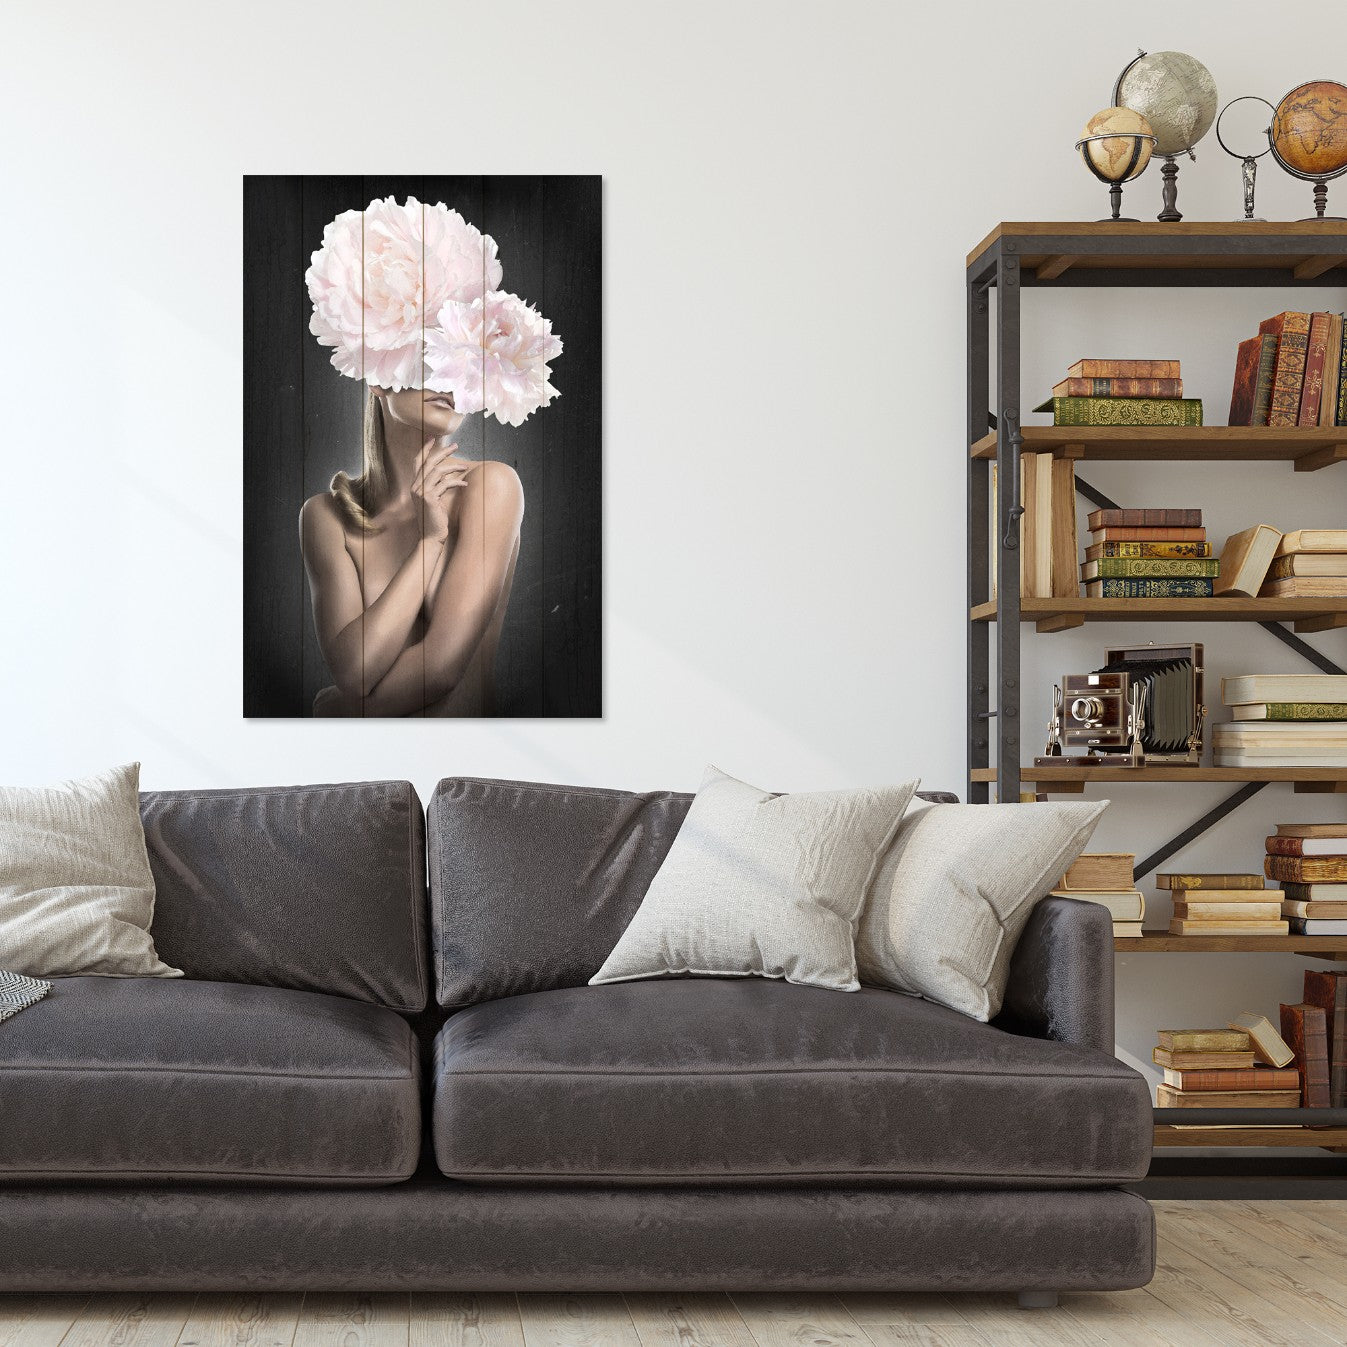 Obraz na drewnie Kobieta z kwiatami - Woman with Pink Peonies